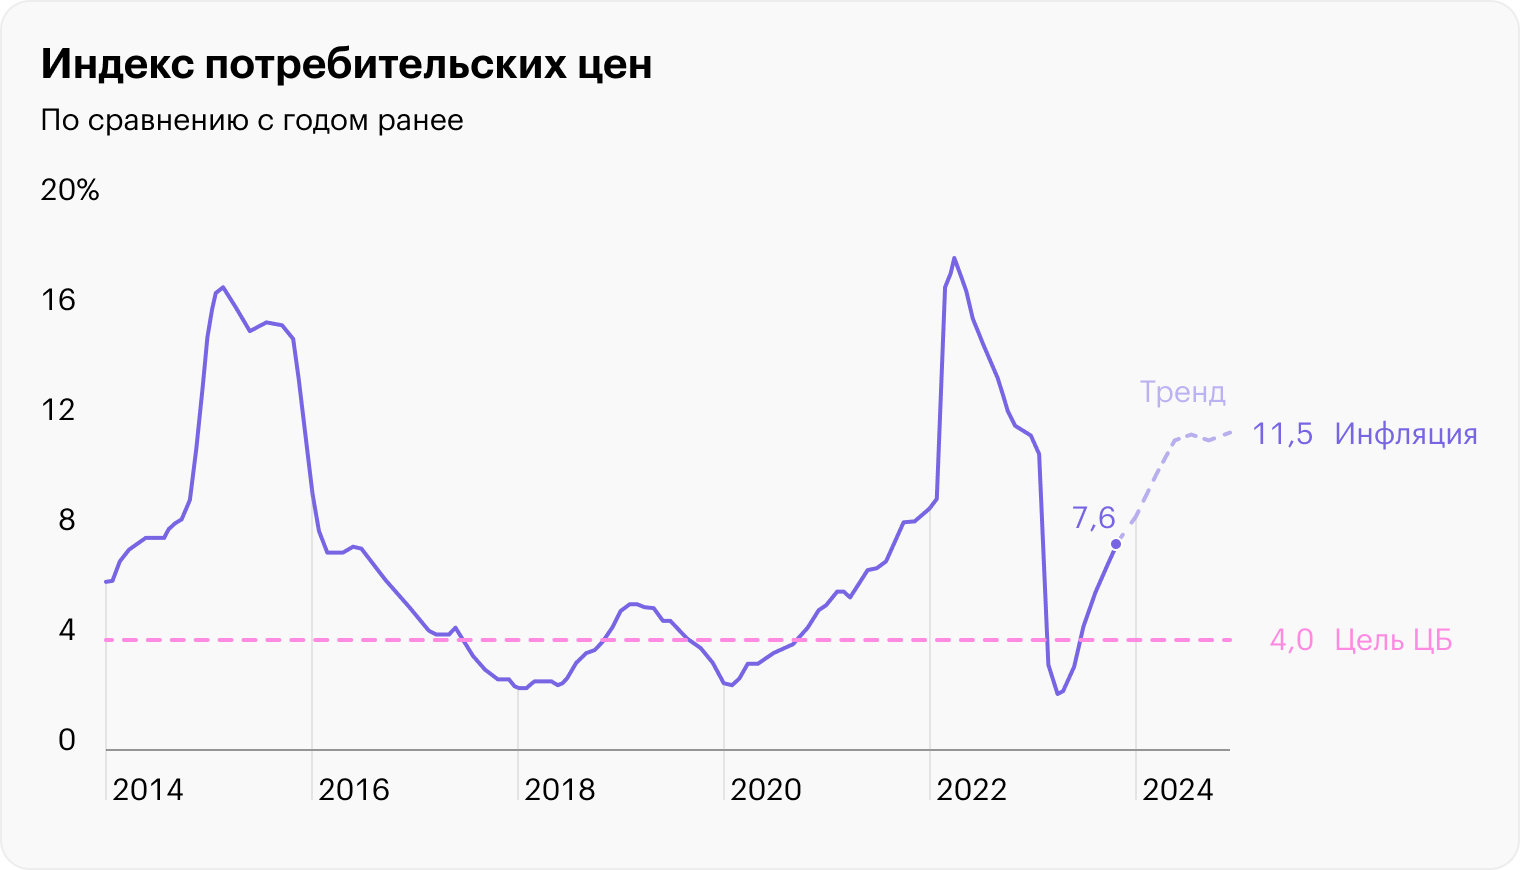 Источник: данные Банка России по инфляции, расчеты редакции